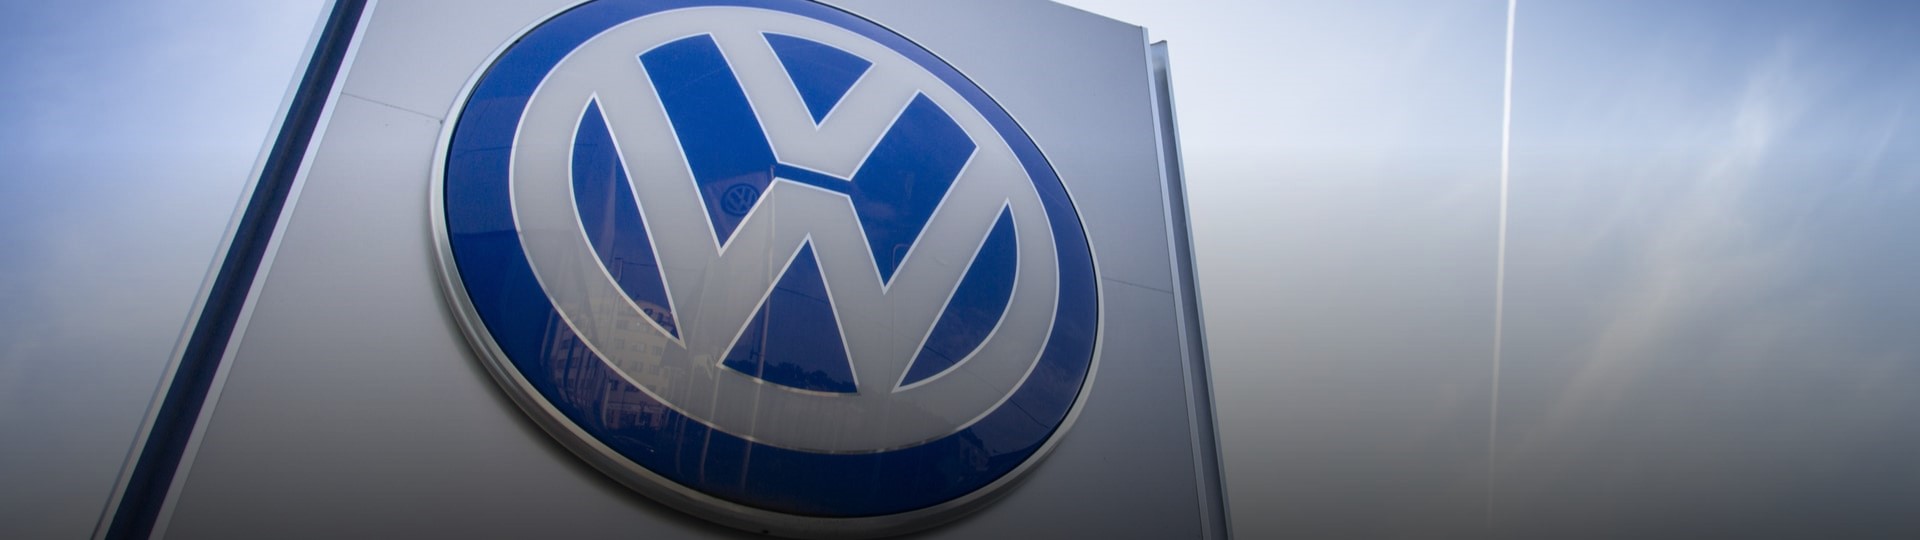 VW za loňský rok čeká provozní zisk kolem deseti miliard eur